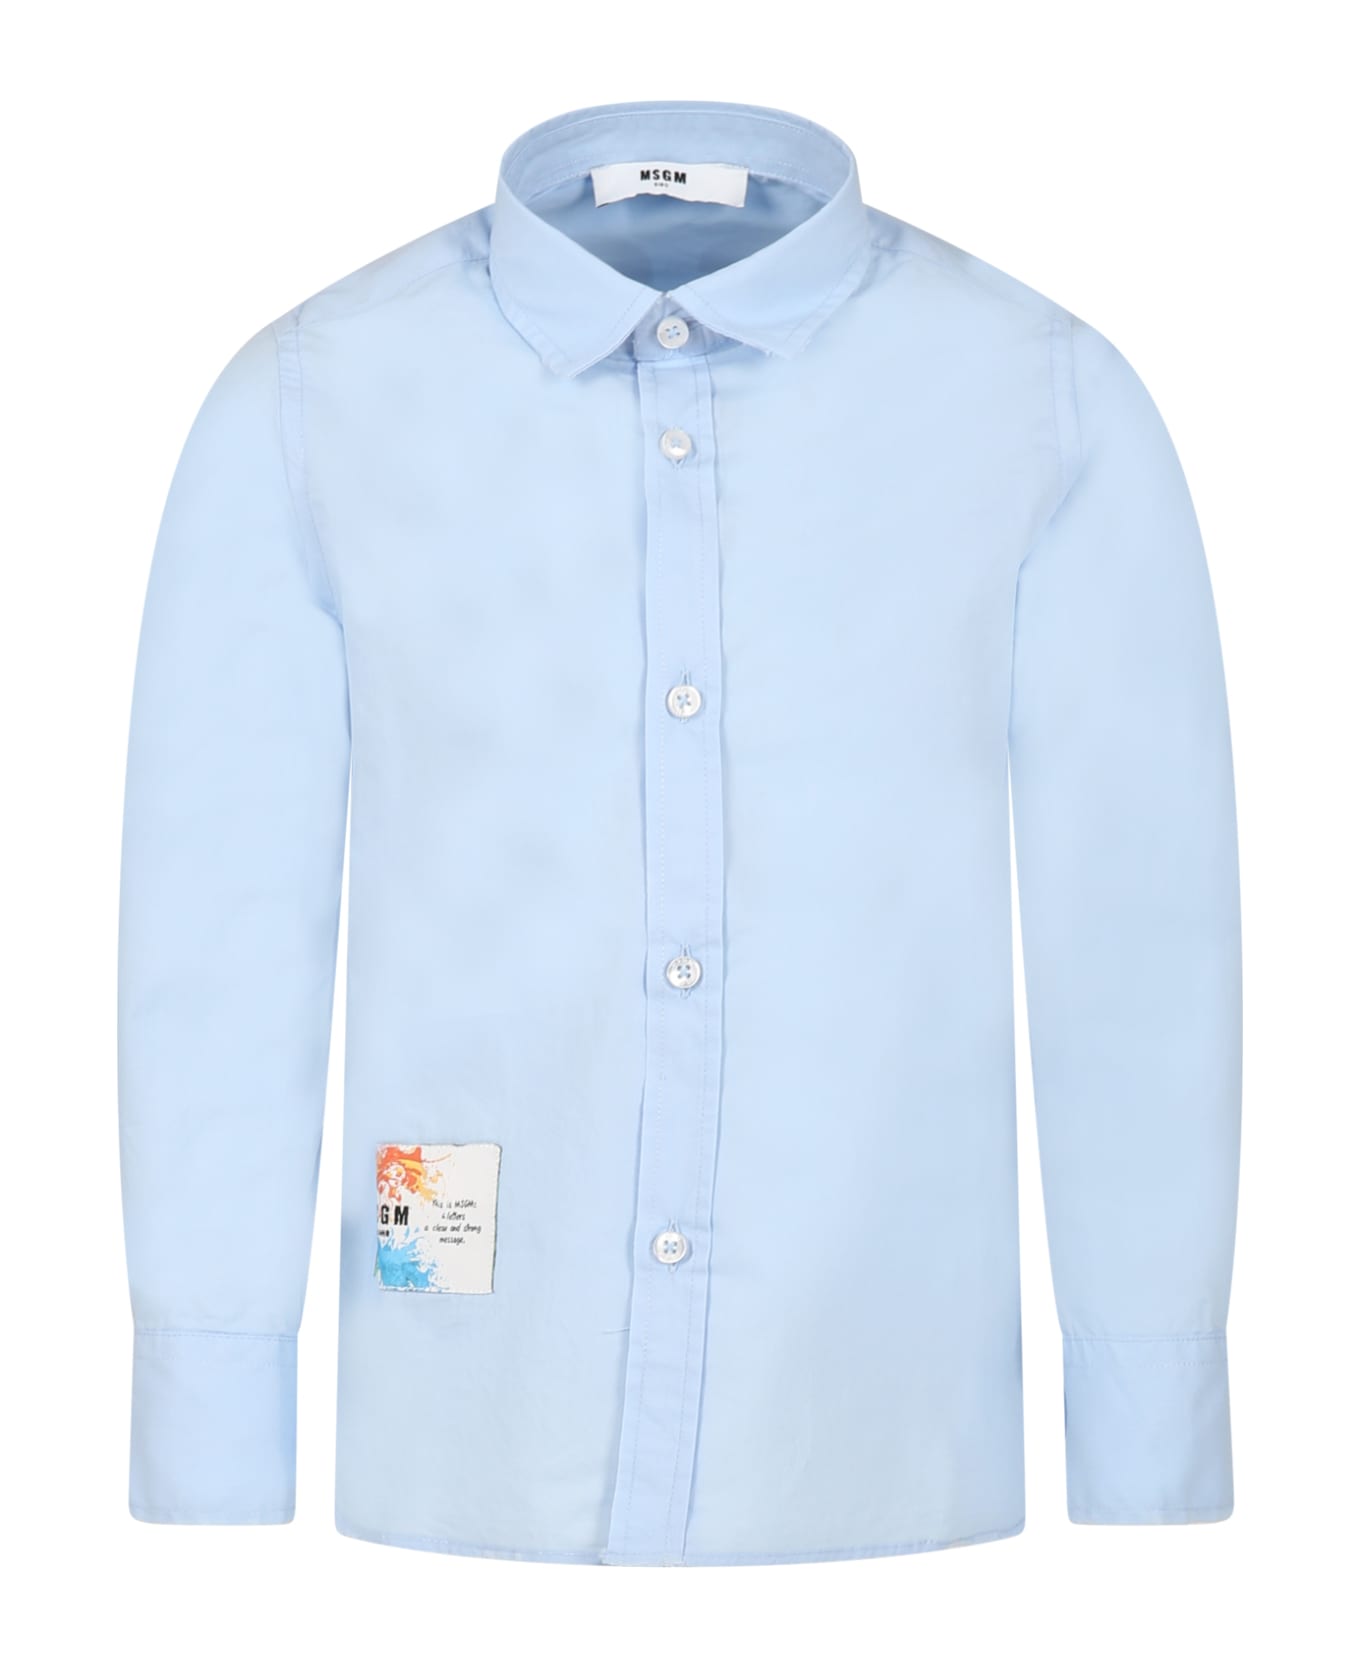 MSGM Light Blue Shirt For Boy With Logo - Light Blue